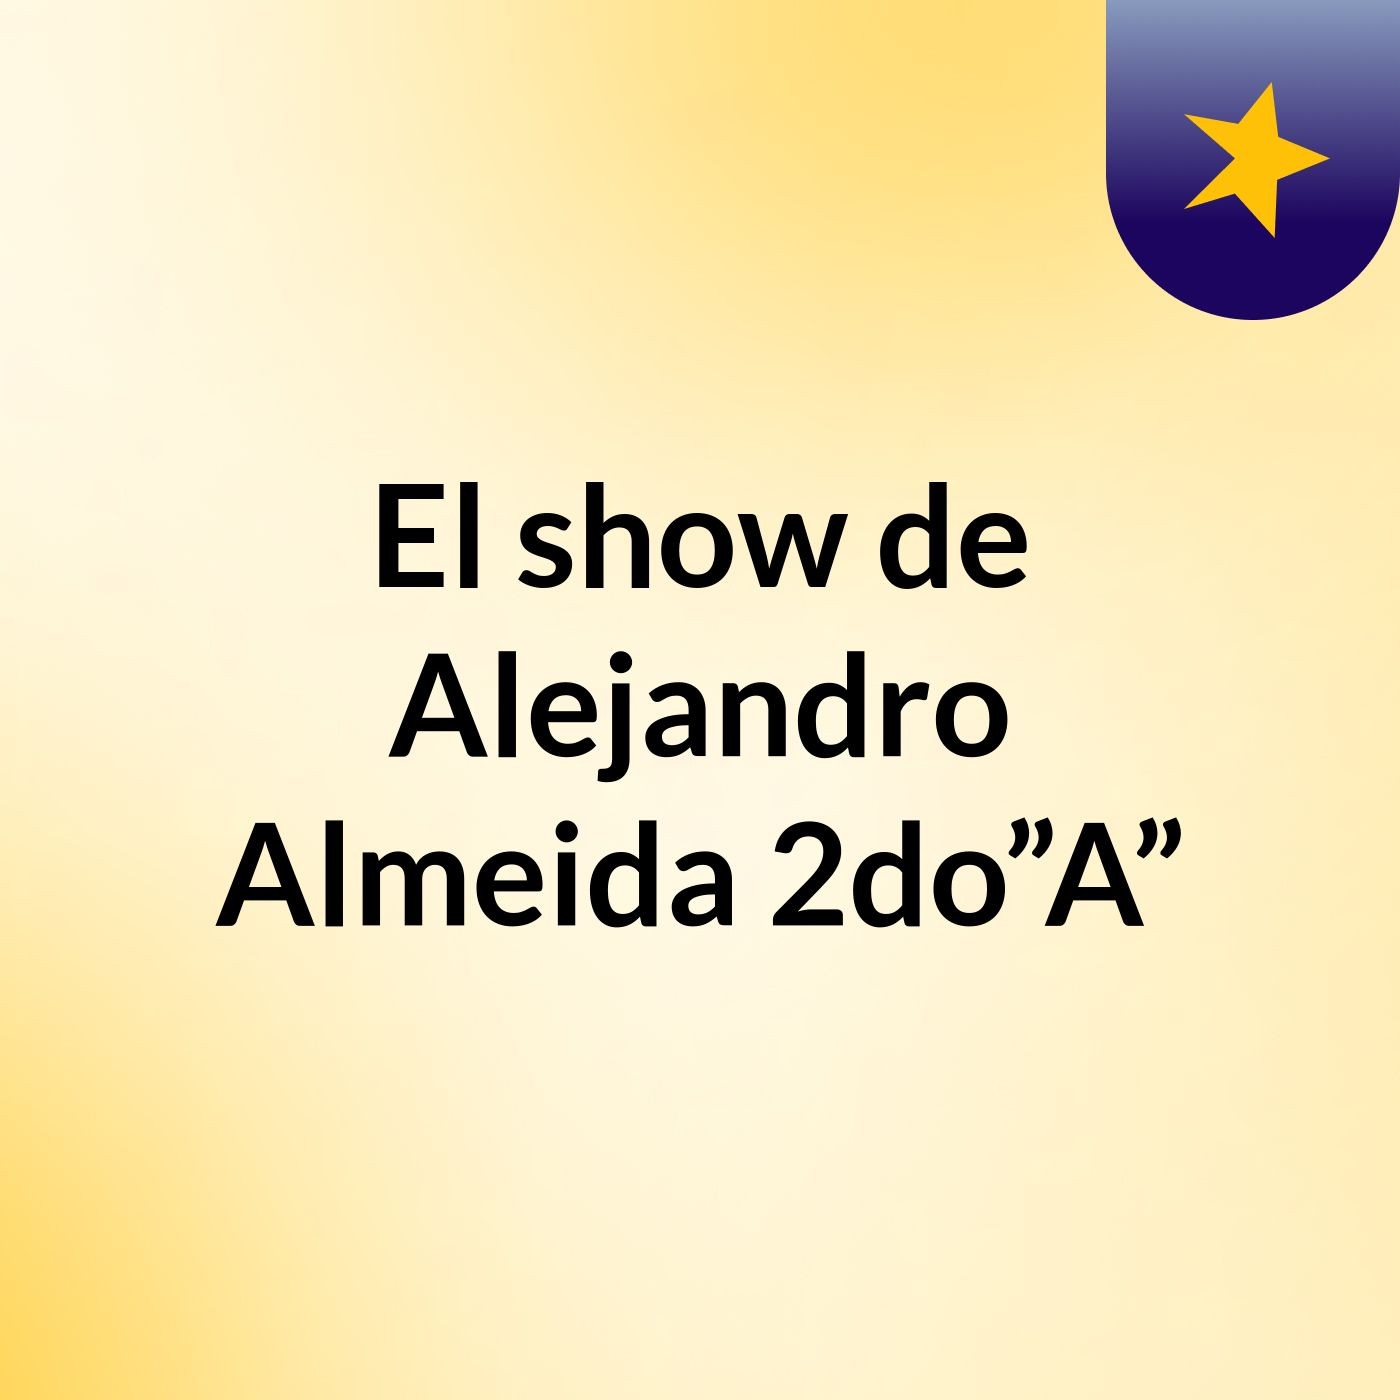 El show de Alejandro Almeida 2do”A”